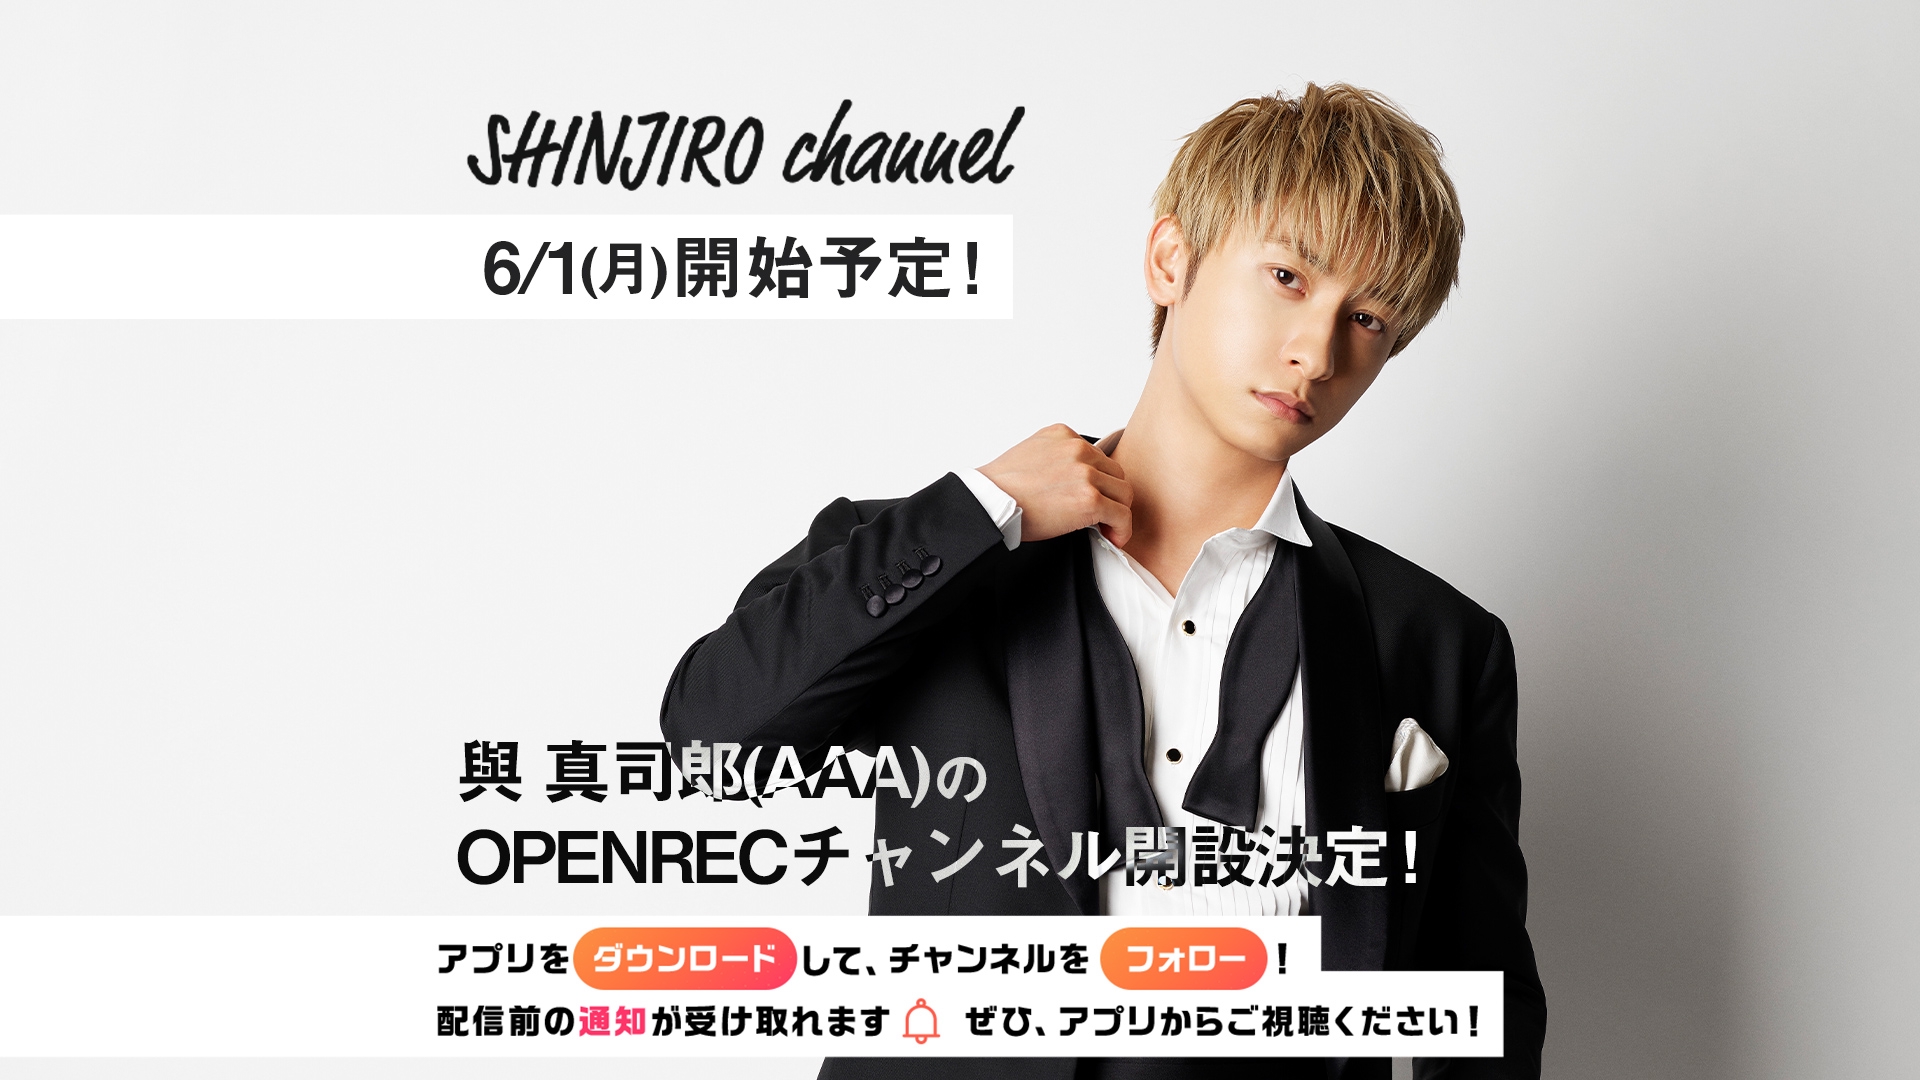 與 真司郎 a さんの公式チャンネル Shinjiro Channel が開設決定 Openrec Next